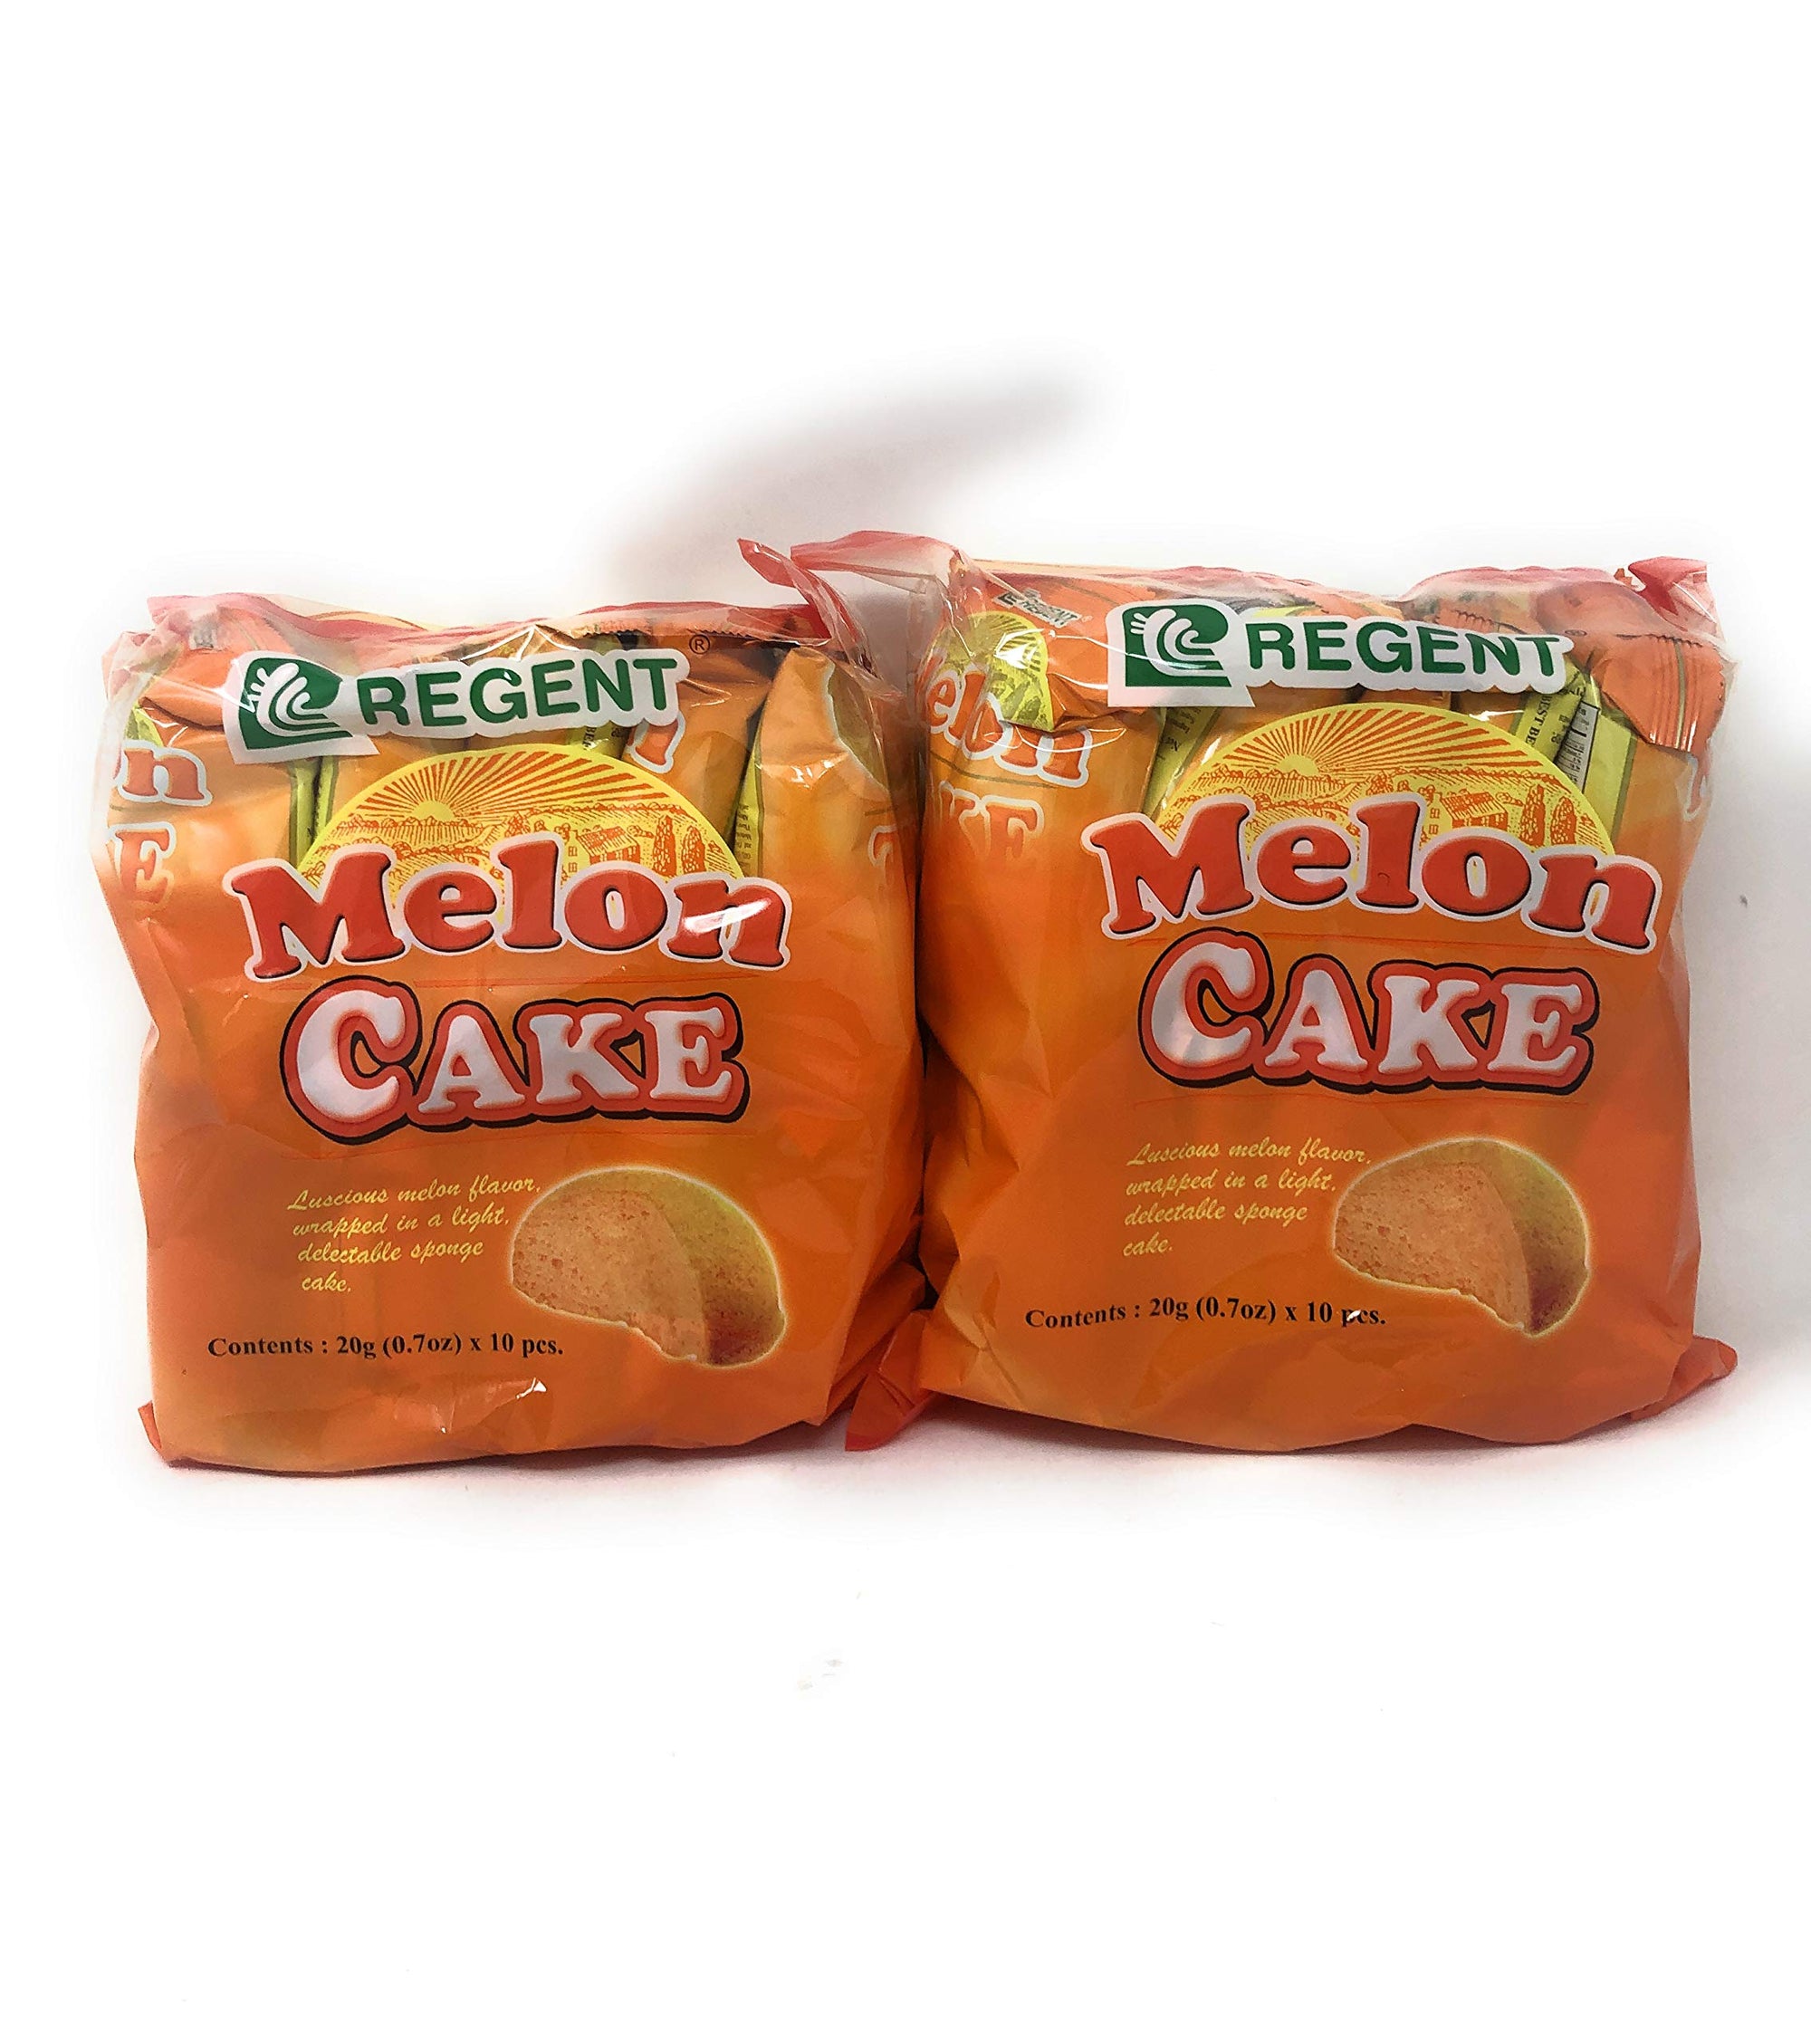 Regent Melon Cake Net Wt 20g(0.7oz) x 10 Pieces, 2 Pack